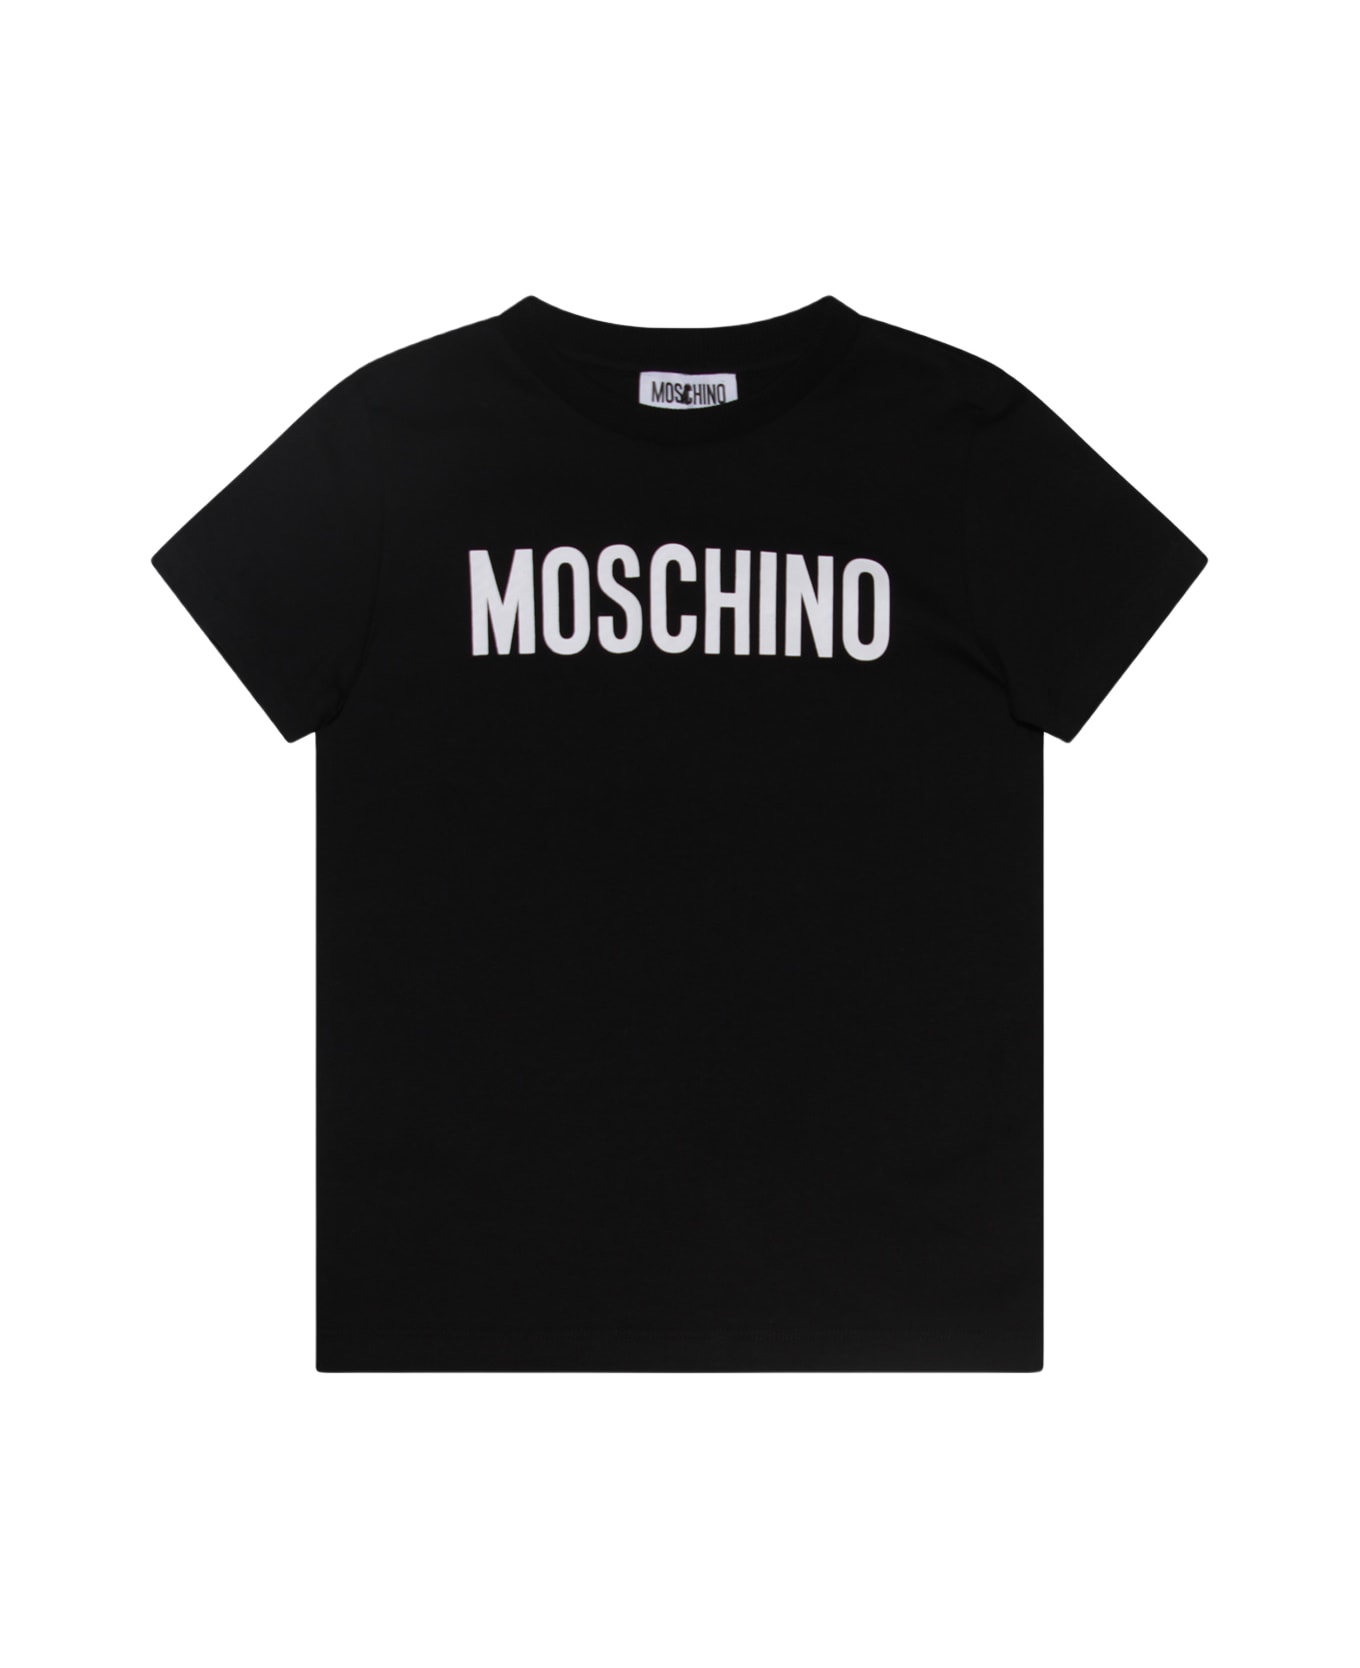 Moschino Black And White Cotton T-shirt - Nero